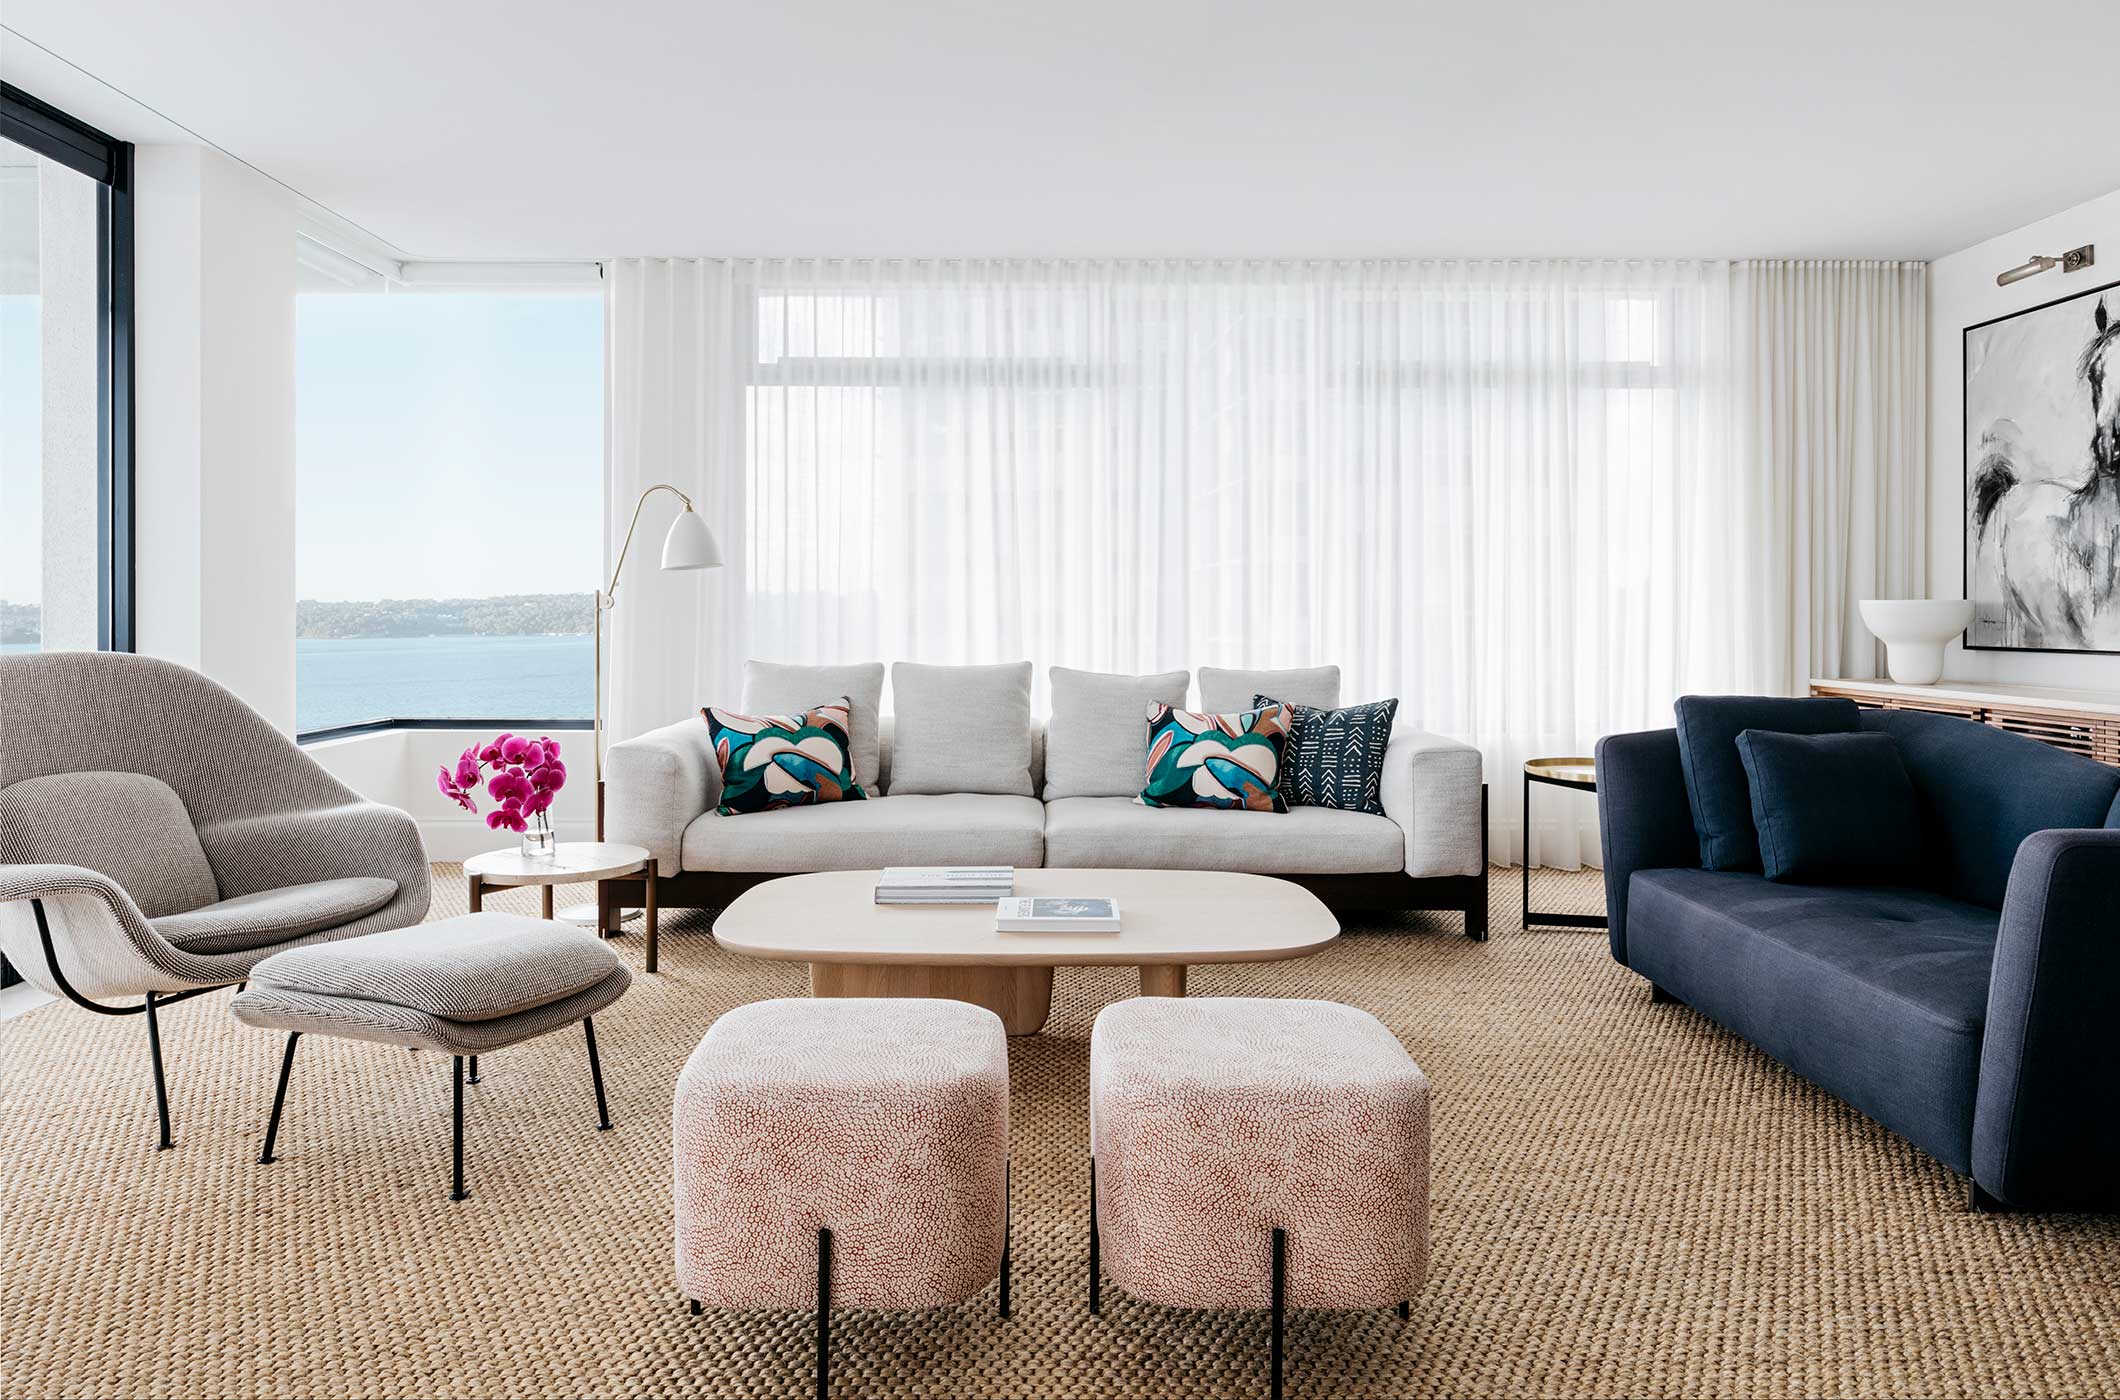 米白主色调彼此往来，家具造型优雅，呈现出舒适质朴又不失个性的客厅空间。